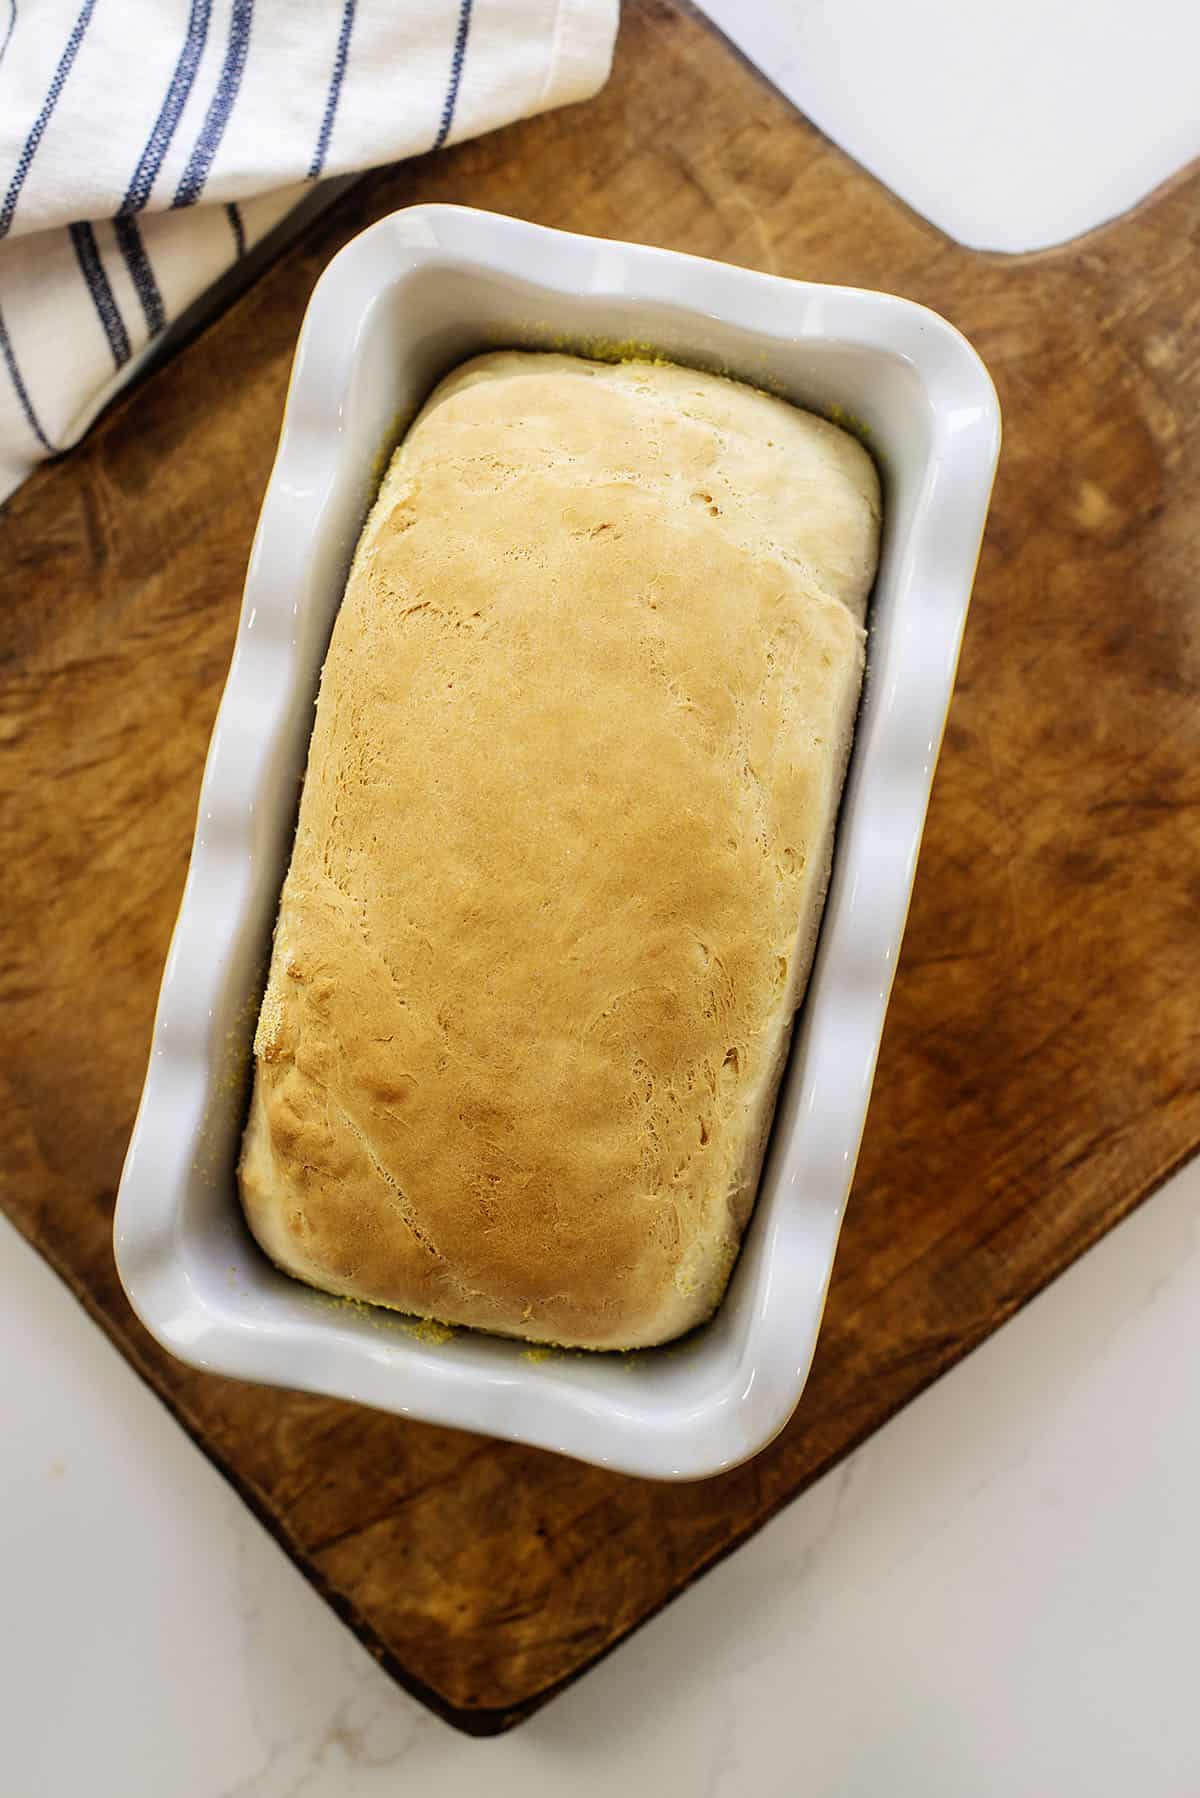 https://www.bunsinmyoven.com/wp-content/uploads/2014/02/bread-recipe.jpg